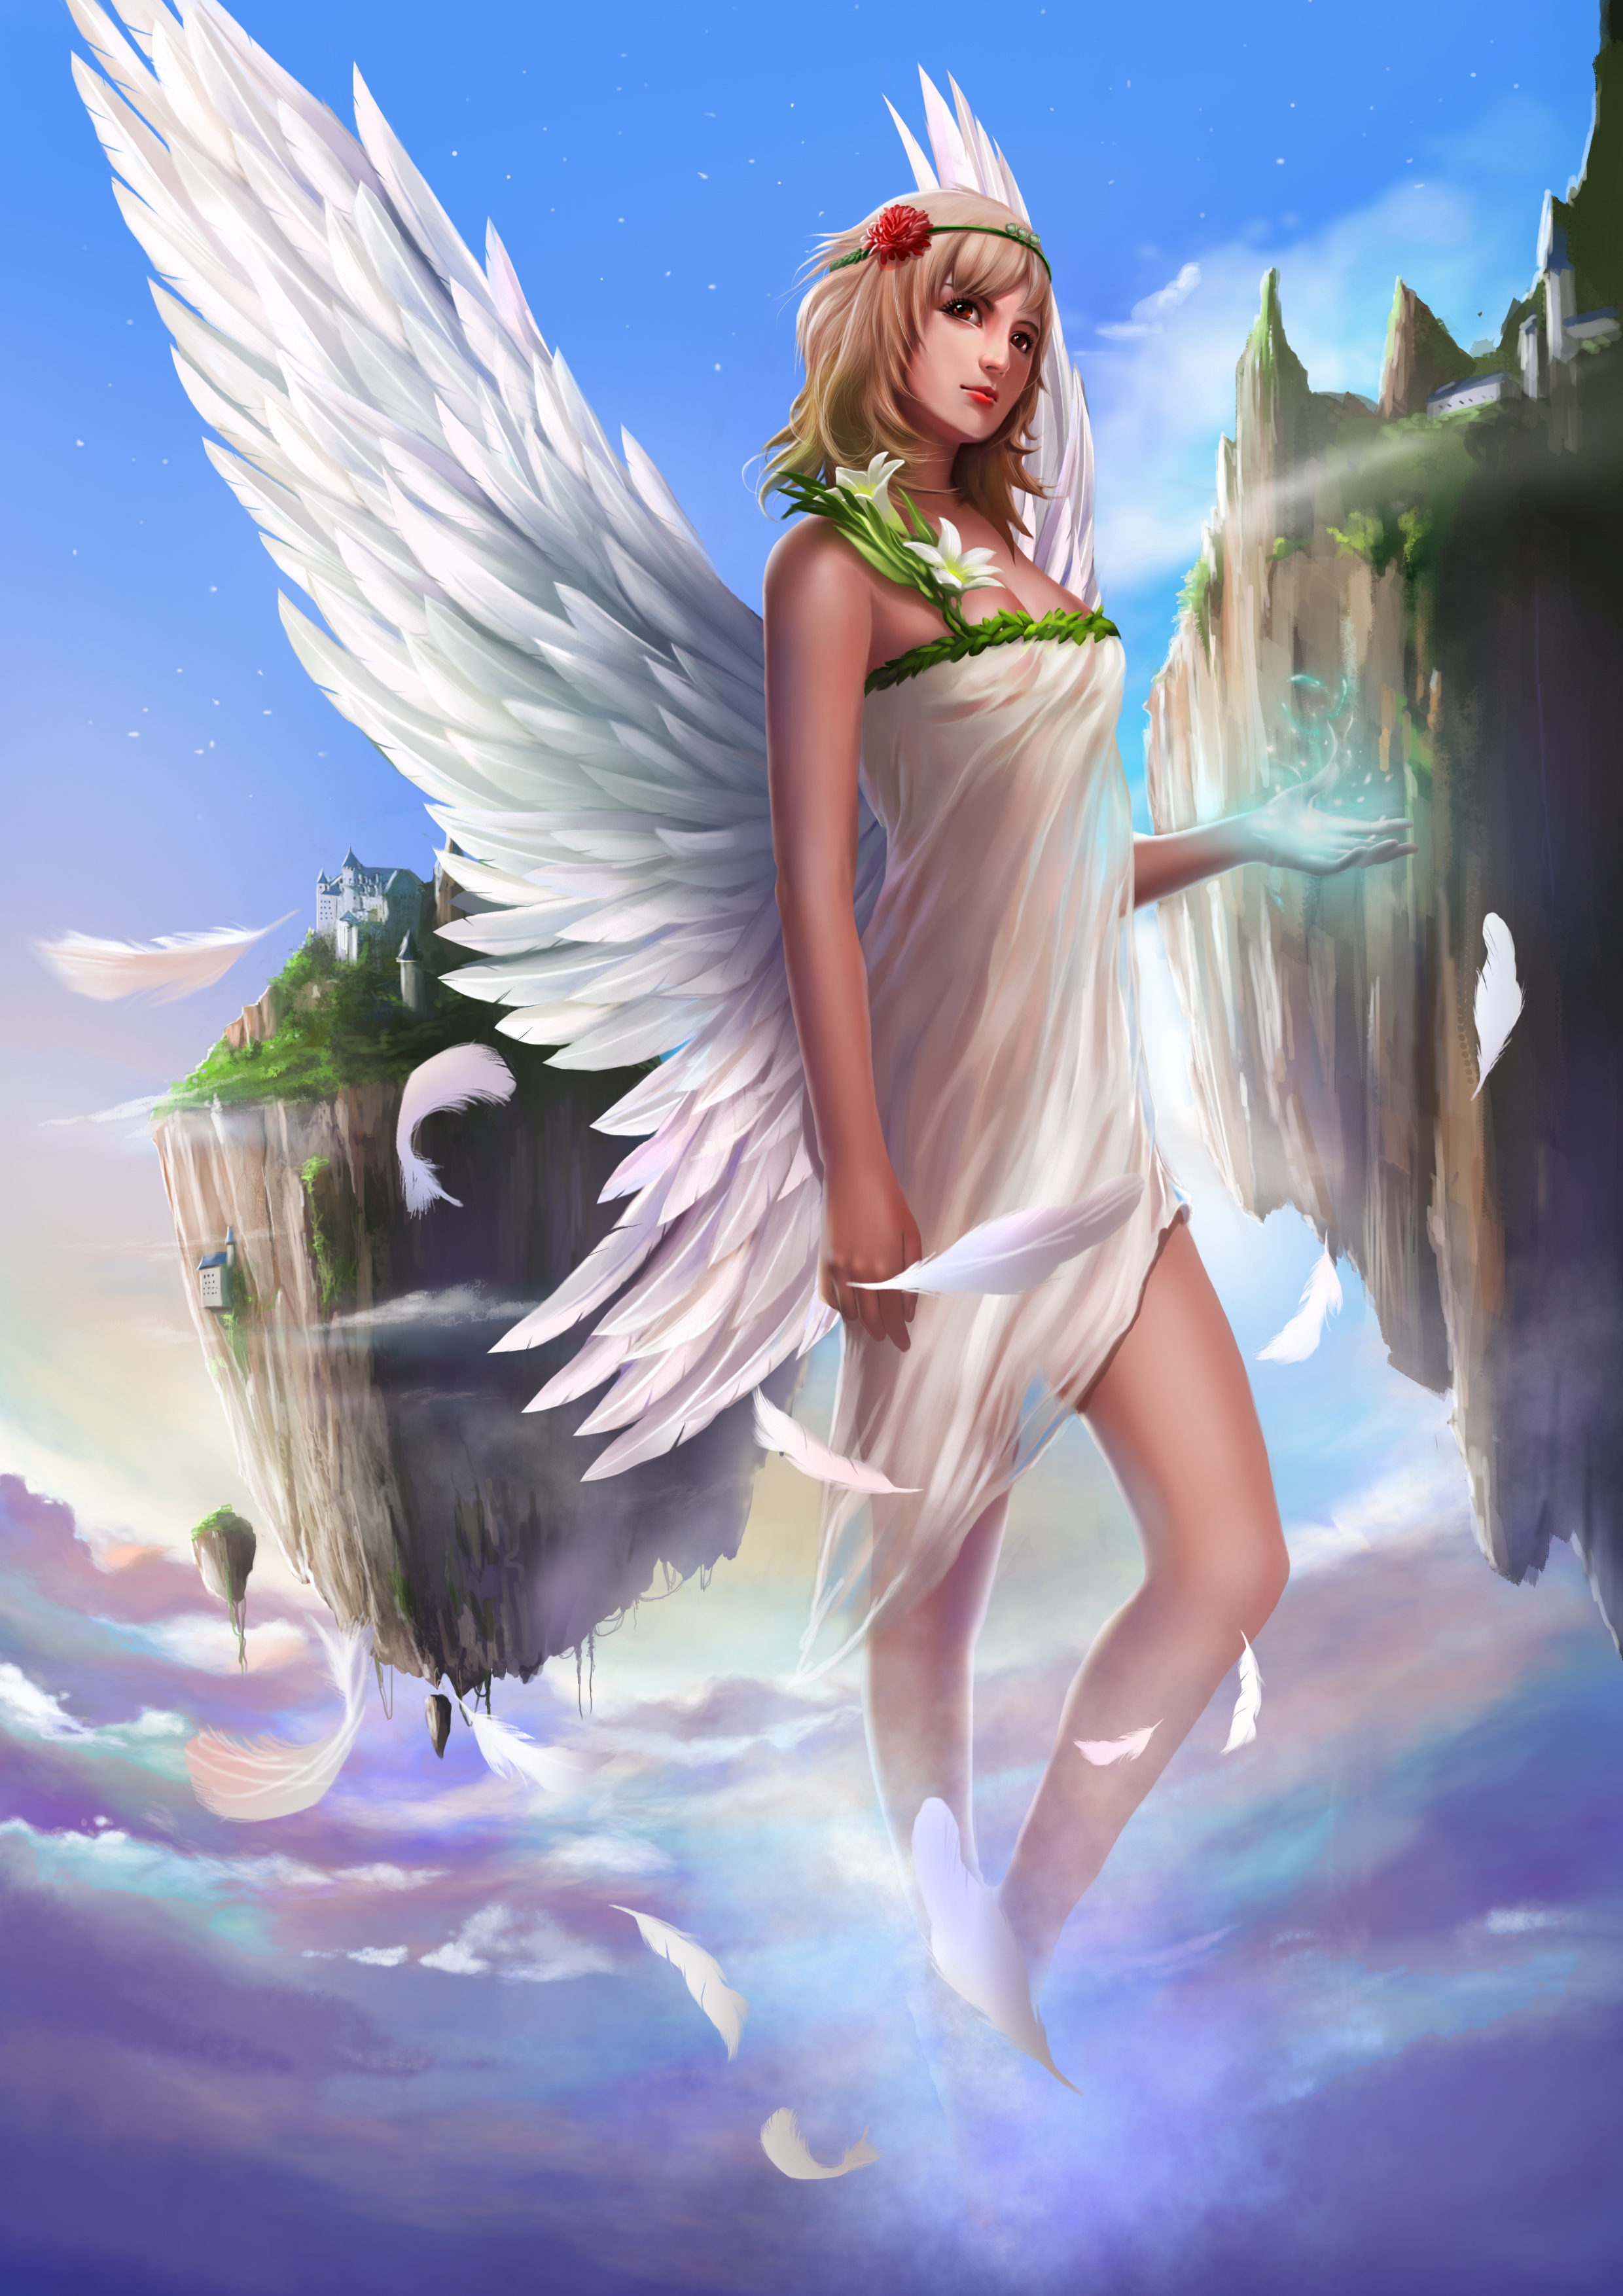 Bilde Vinger Fantasy ung kvinne Engler 2480x3508 til Mobilen Unge kvinner engel